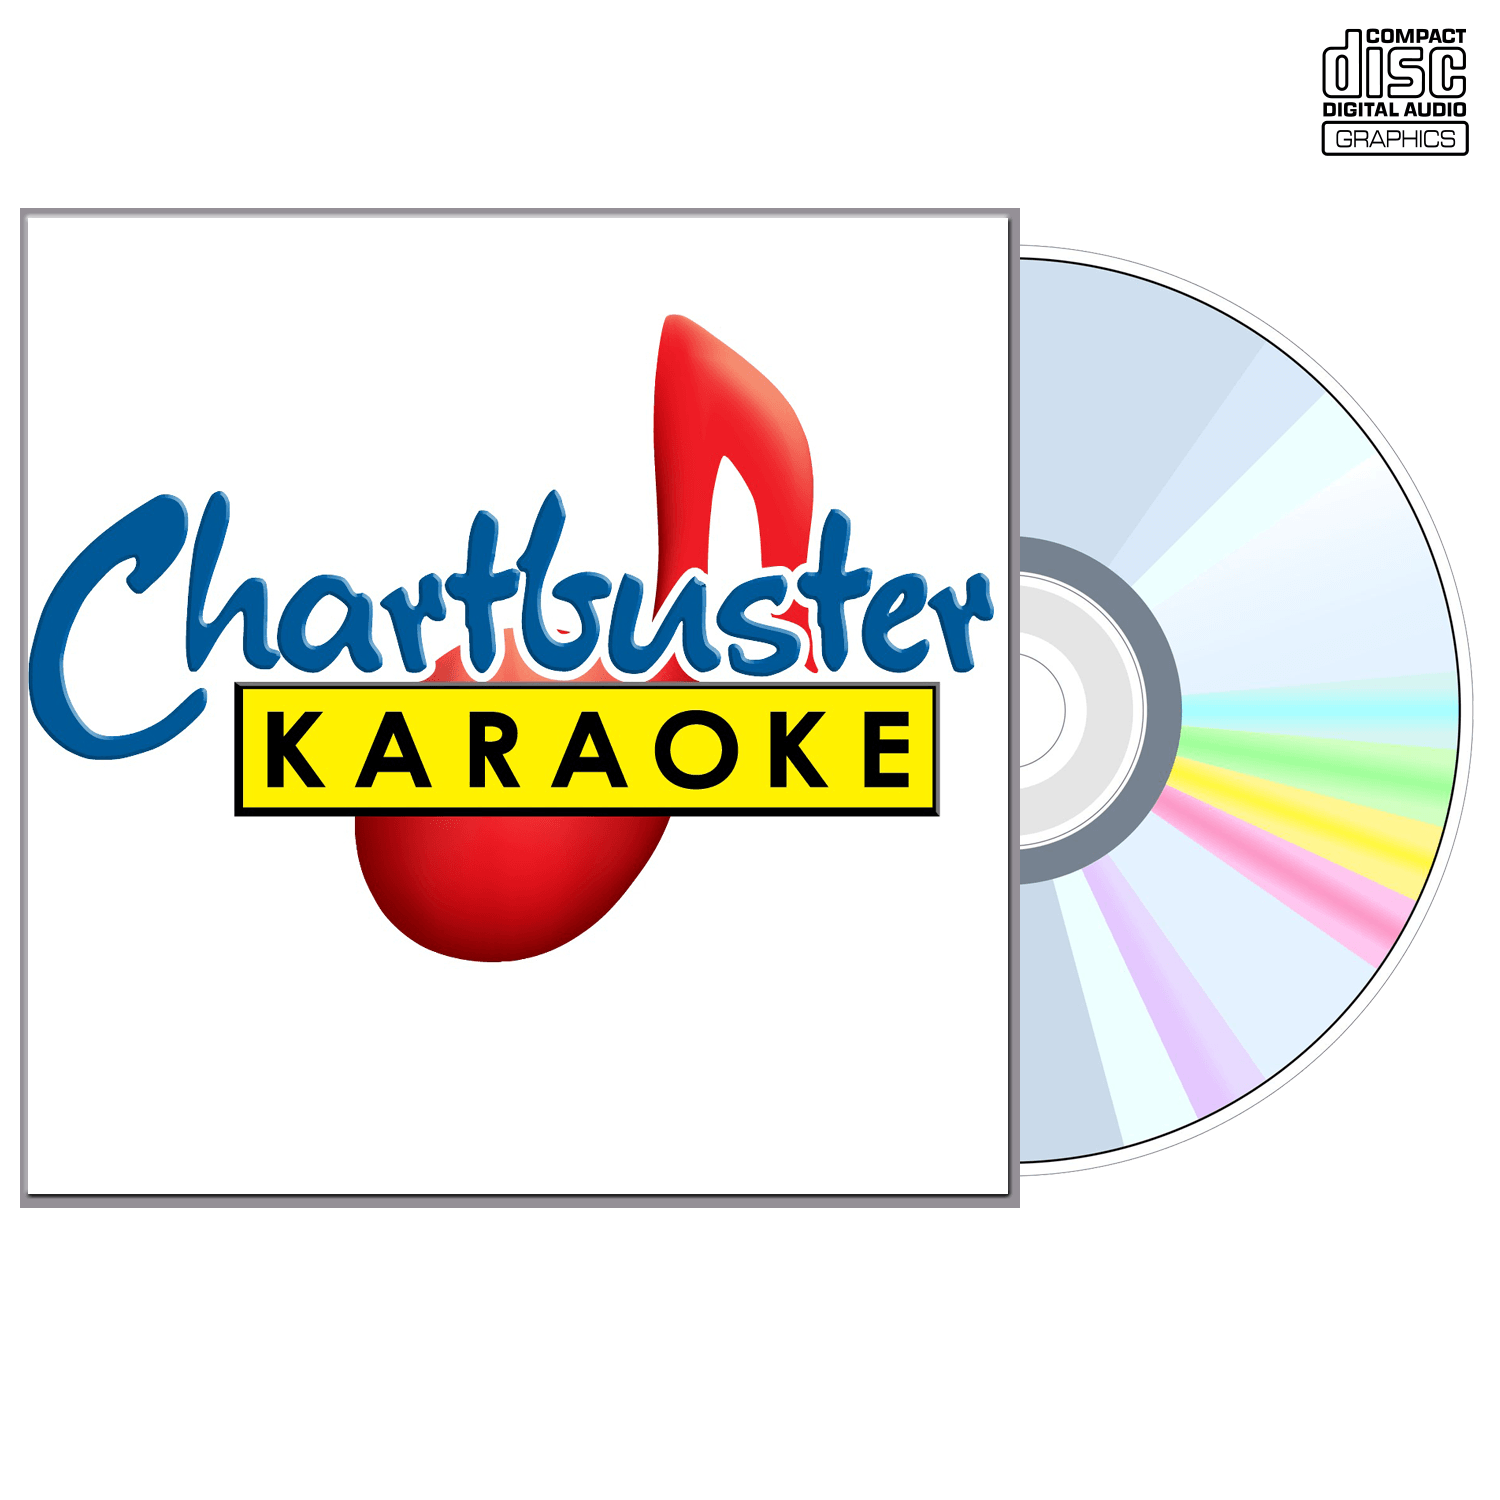 Chris Cagle - CD+G - Chartbuster Karaoke - Karaoke Home Entertainment